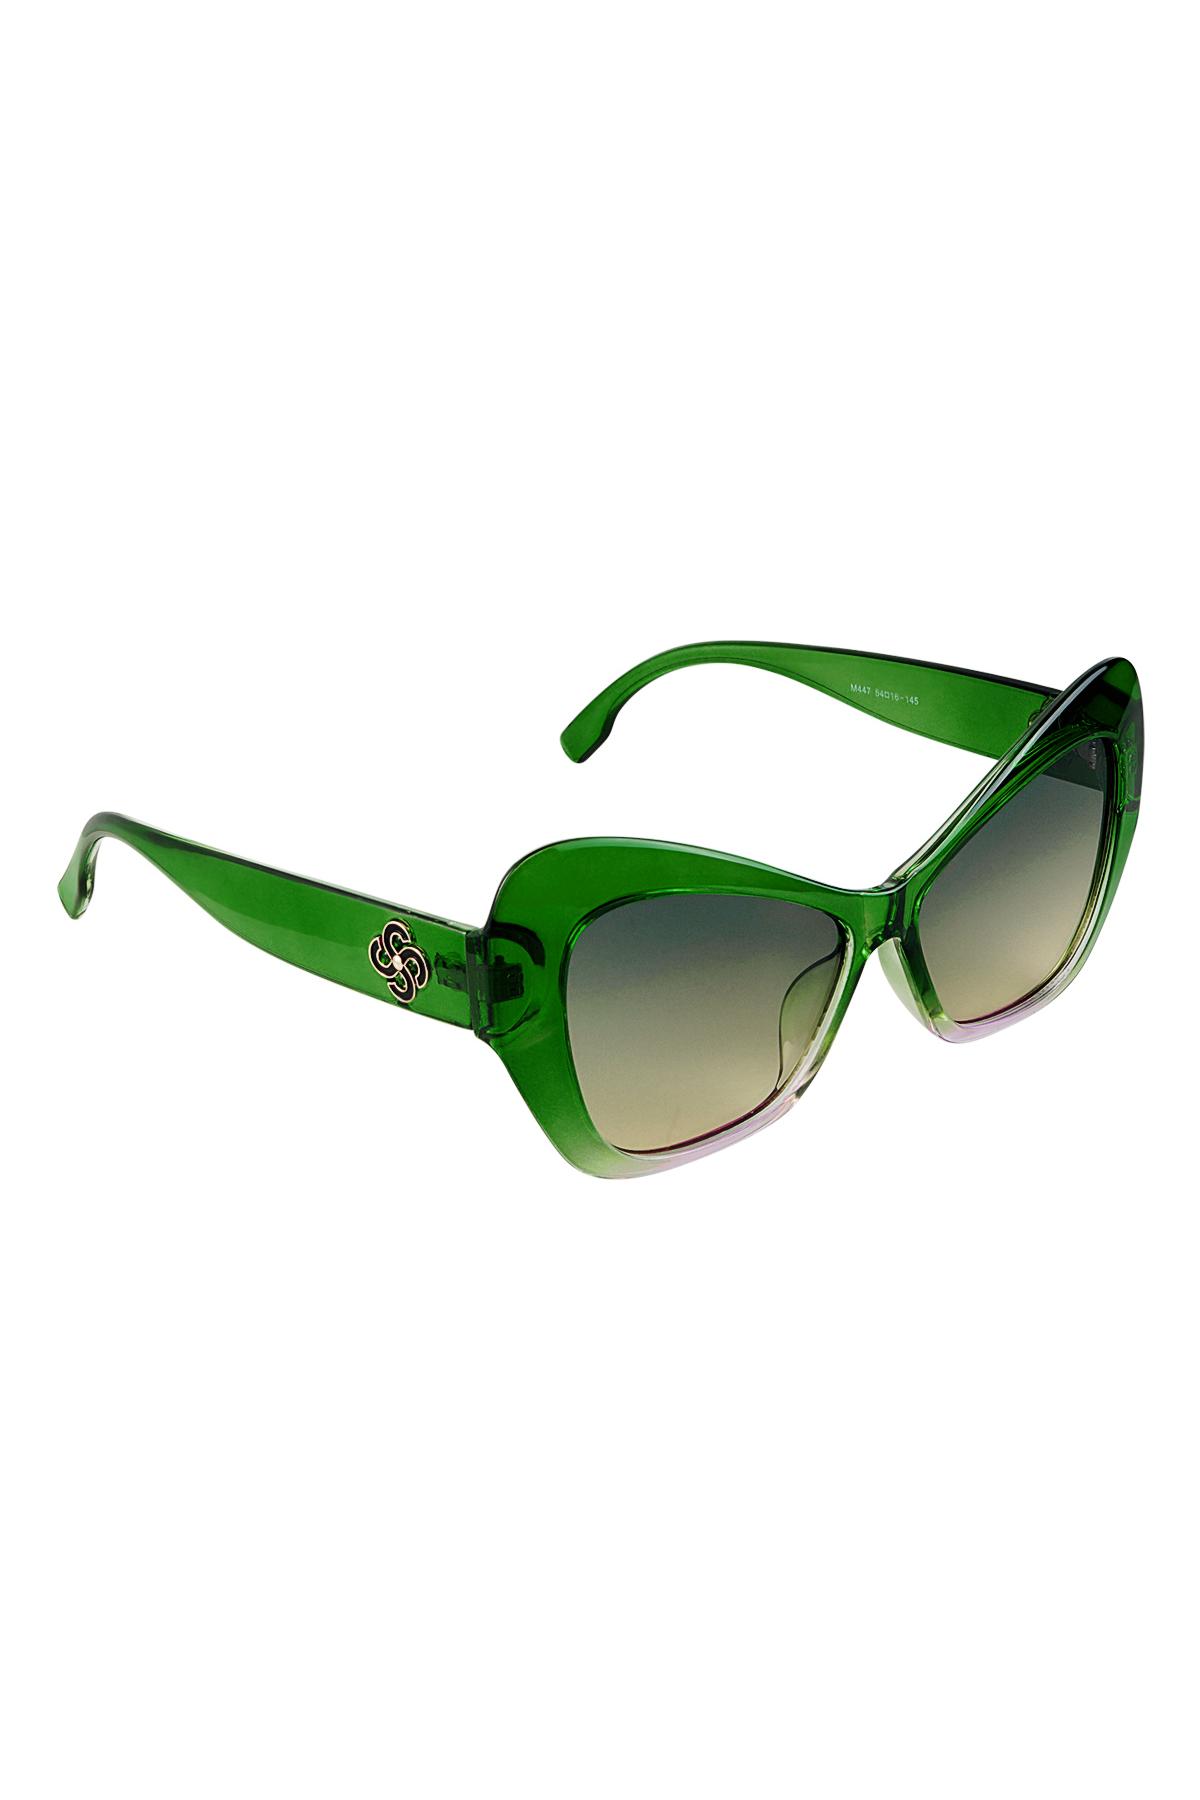 Sonnenbrillen-Statement Grün PC One size